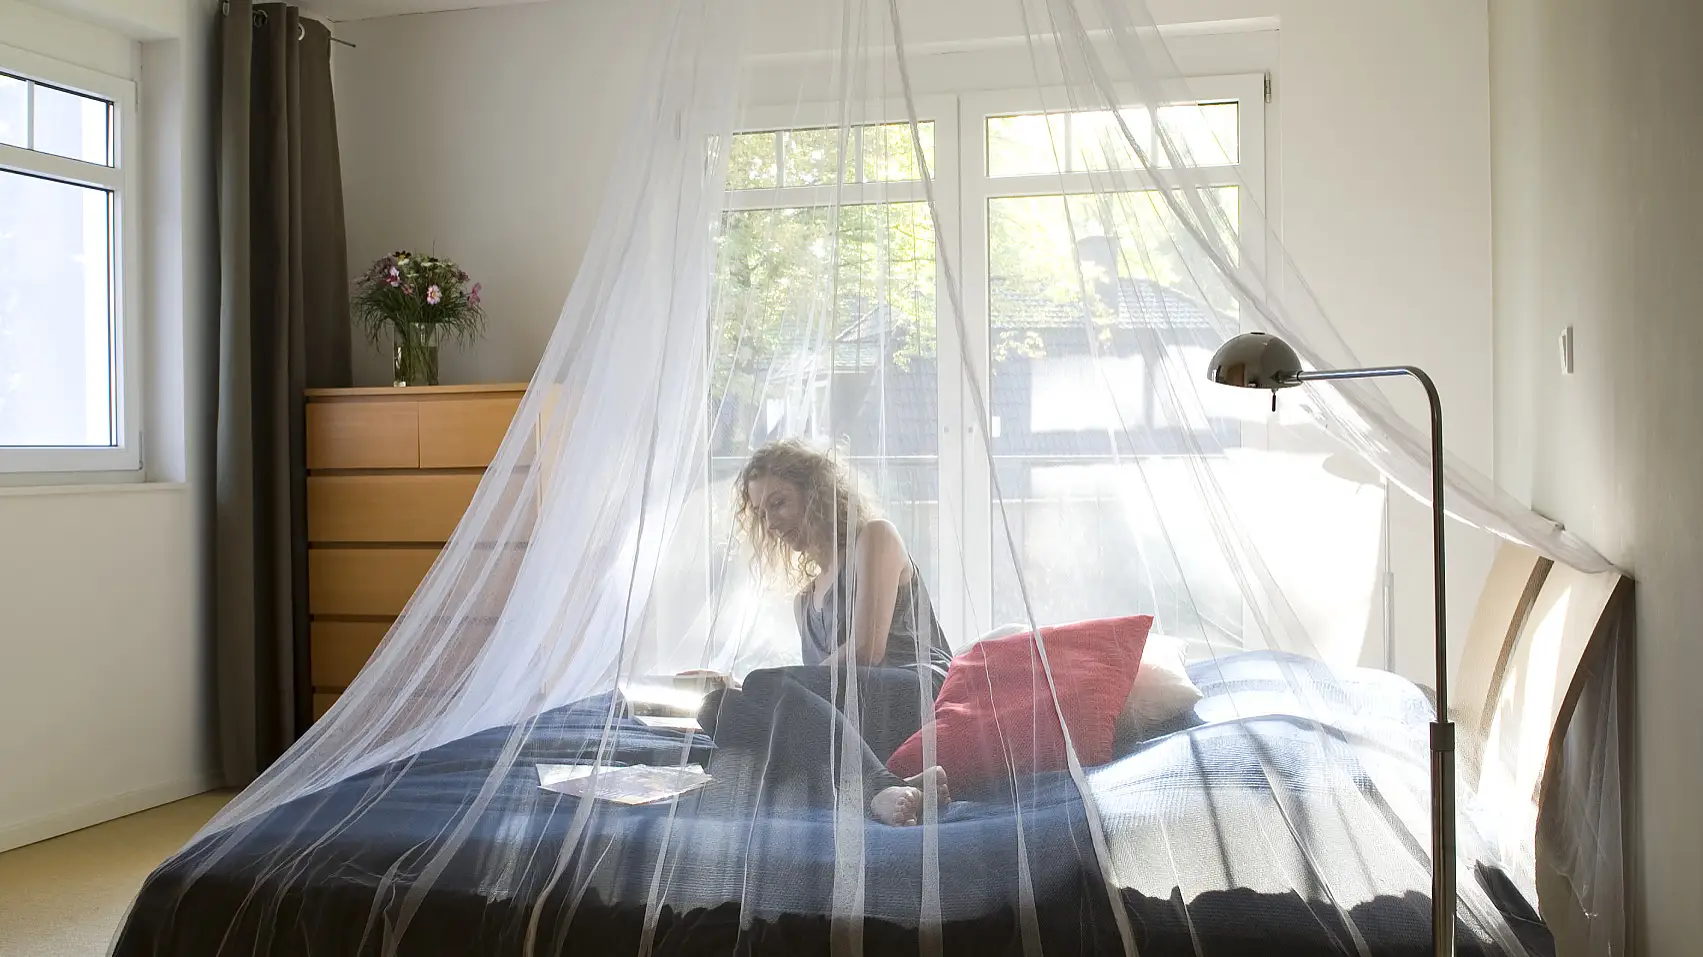 Una zanzariera da letto offre protezione dagli insetti e si appende al soffitto nella camera da letto di casa o in viaggio.